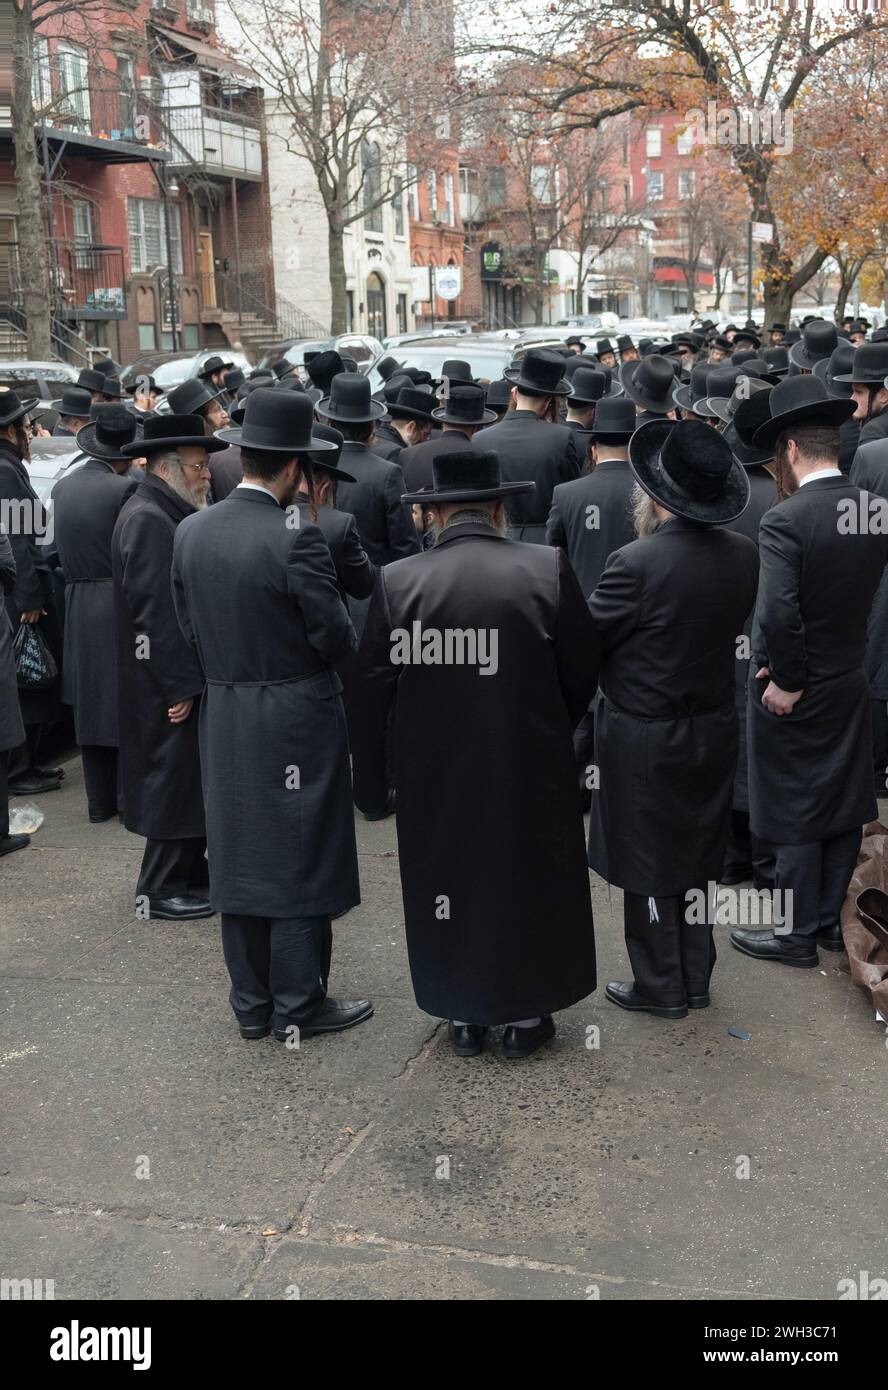 Un grande gruppo di ebrei ortodossi vestiti allo stesso modo ascolta un discorso all'aperto. A Brooklyn, New York. Foto Stock